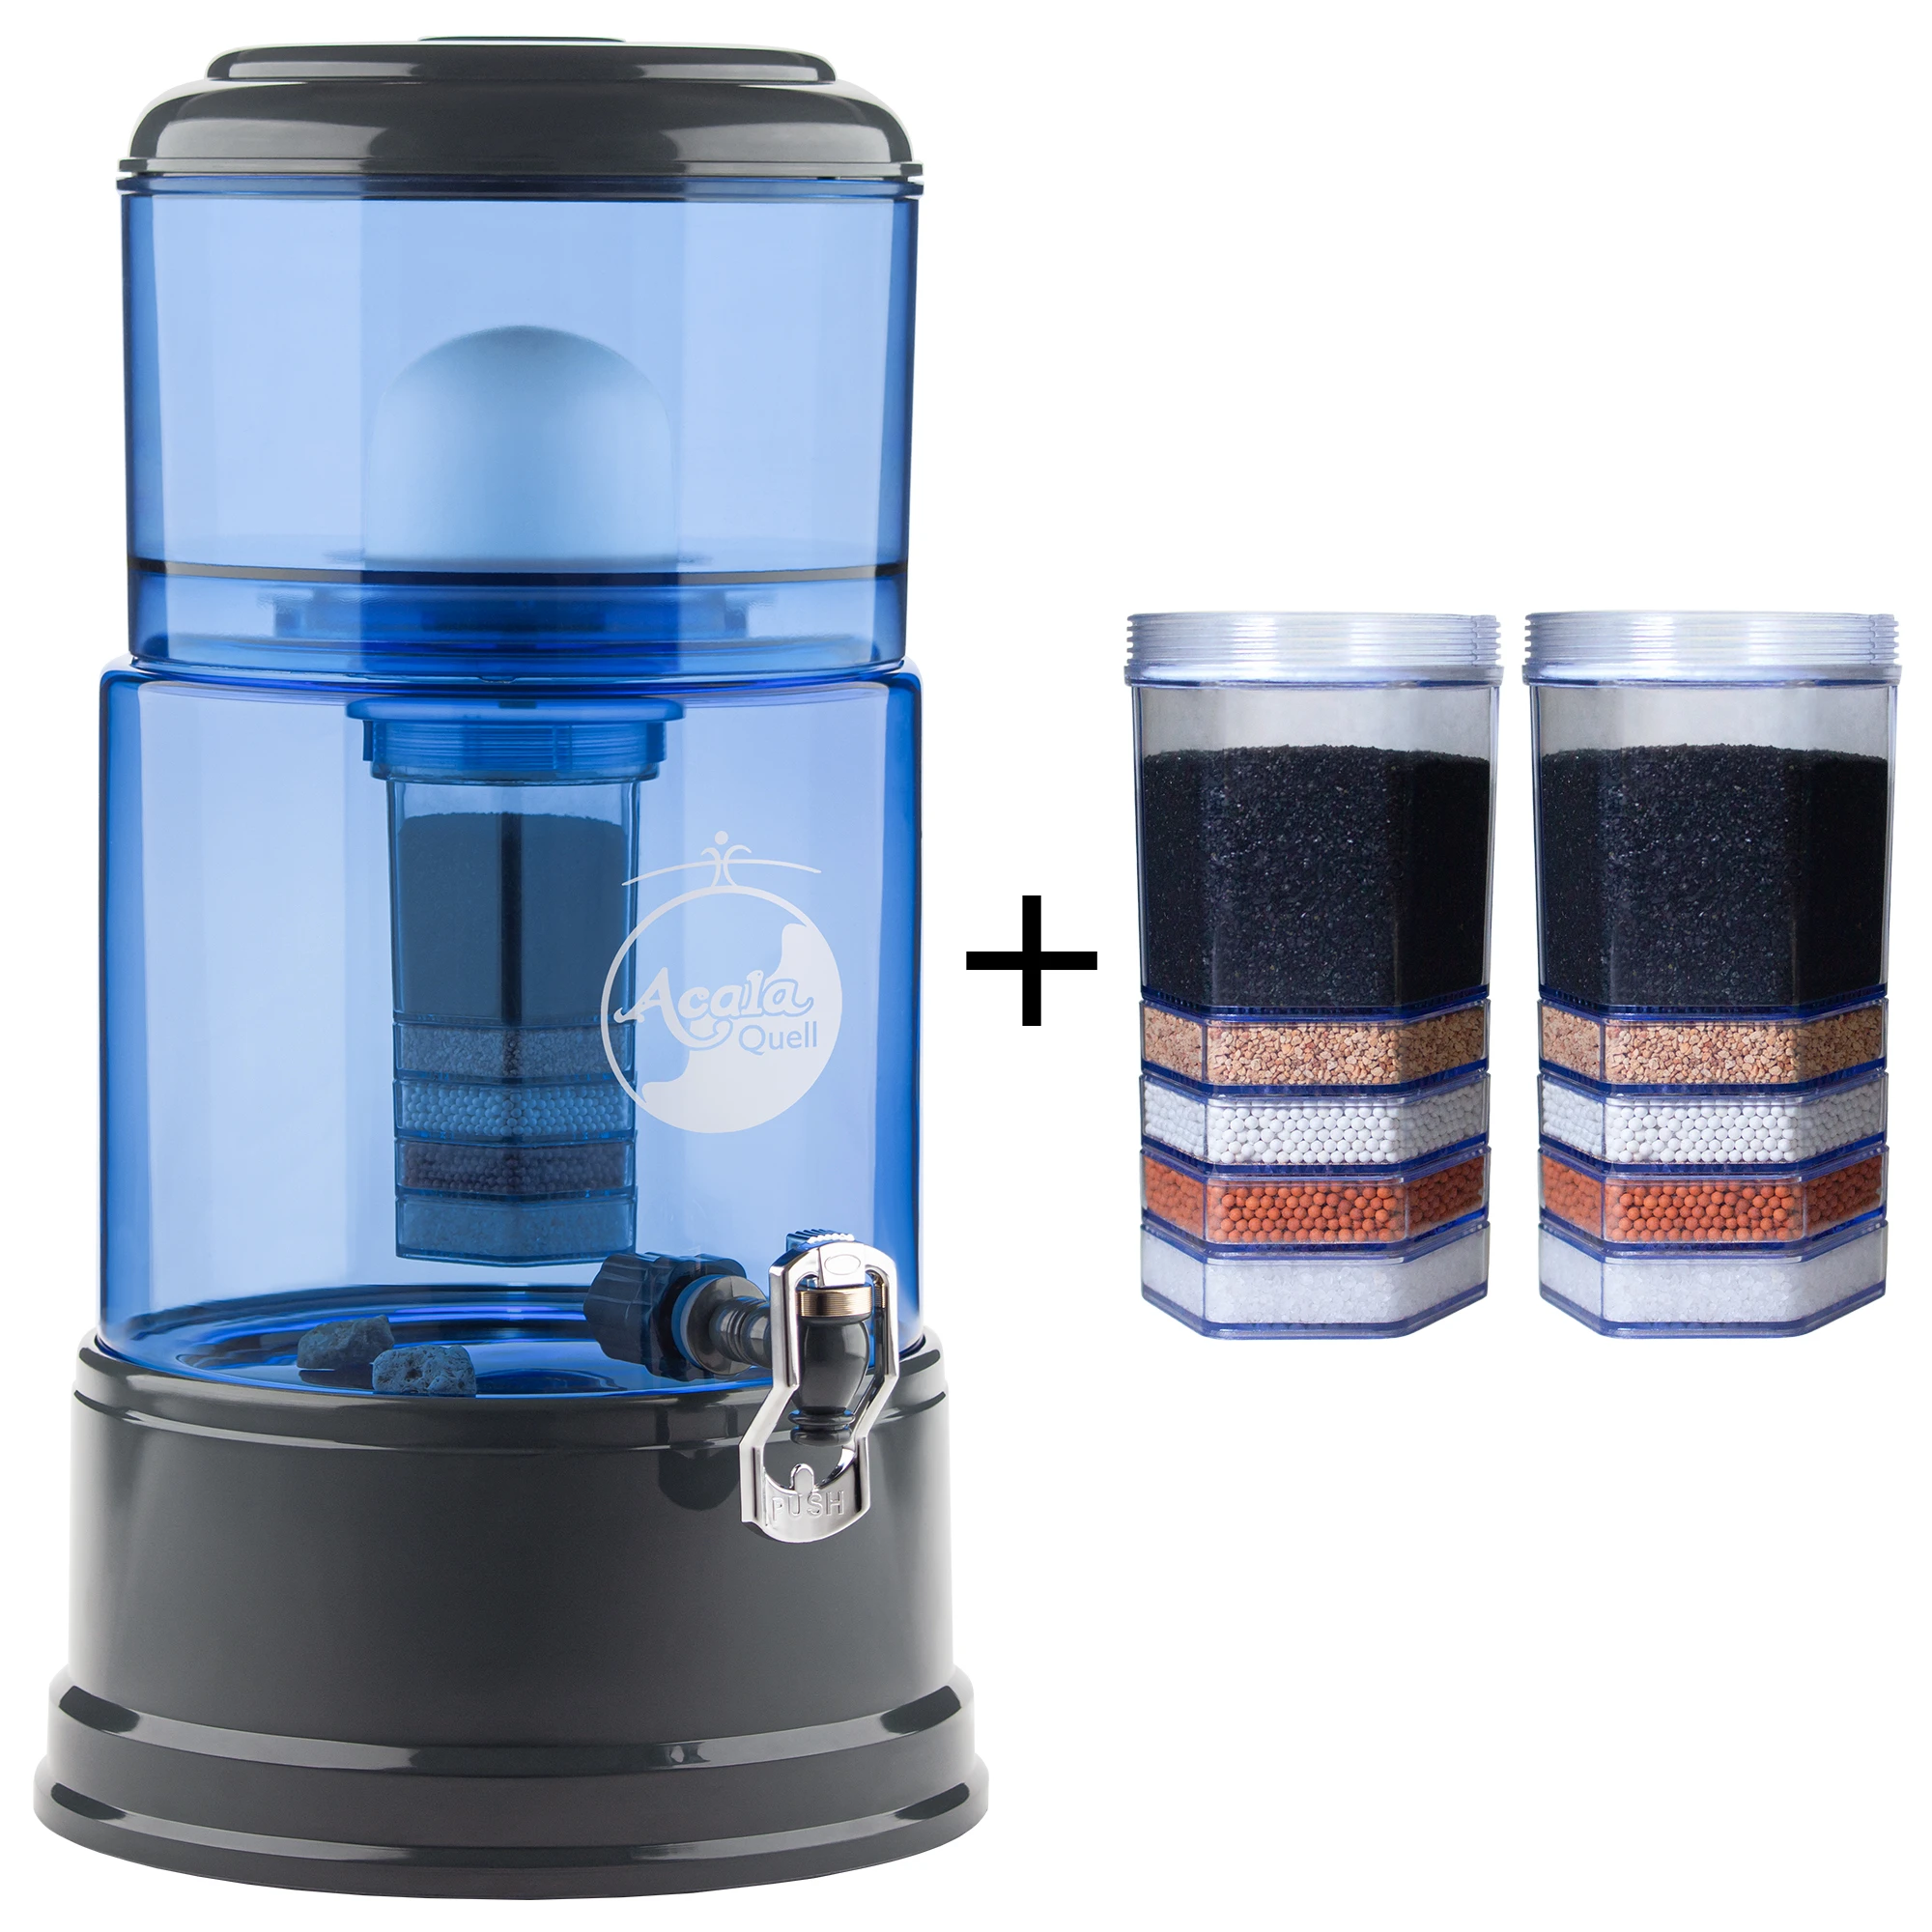 Zu sehen ist der Acala Wasserfilter Smart in blau-anthrazit inklusive einer Filterkartusche und einem Keramikfilter. Zusätzlich sieht man zwei Filterkartuschen. Das Bild zeigt das Einsteigerpaket für ein Jahr.